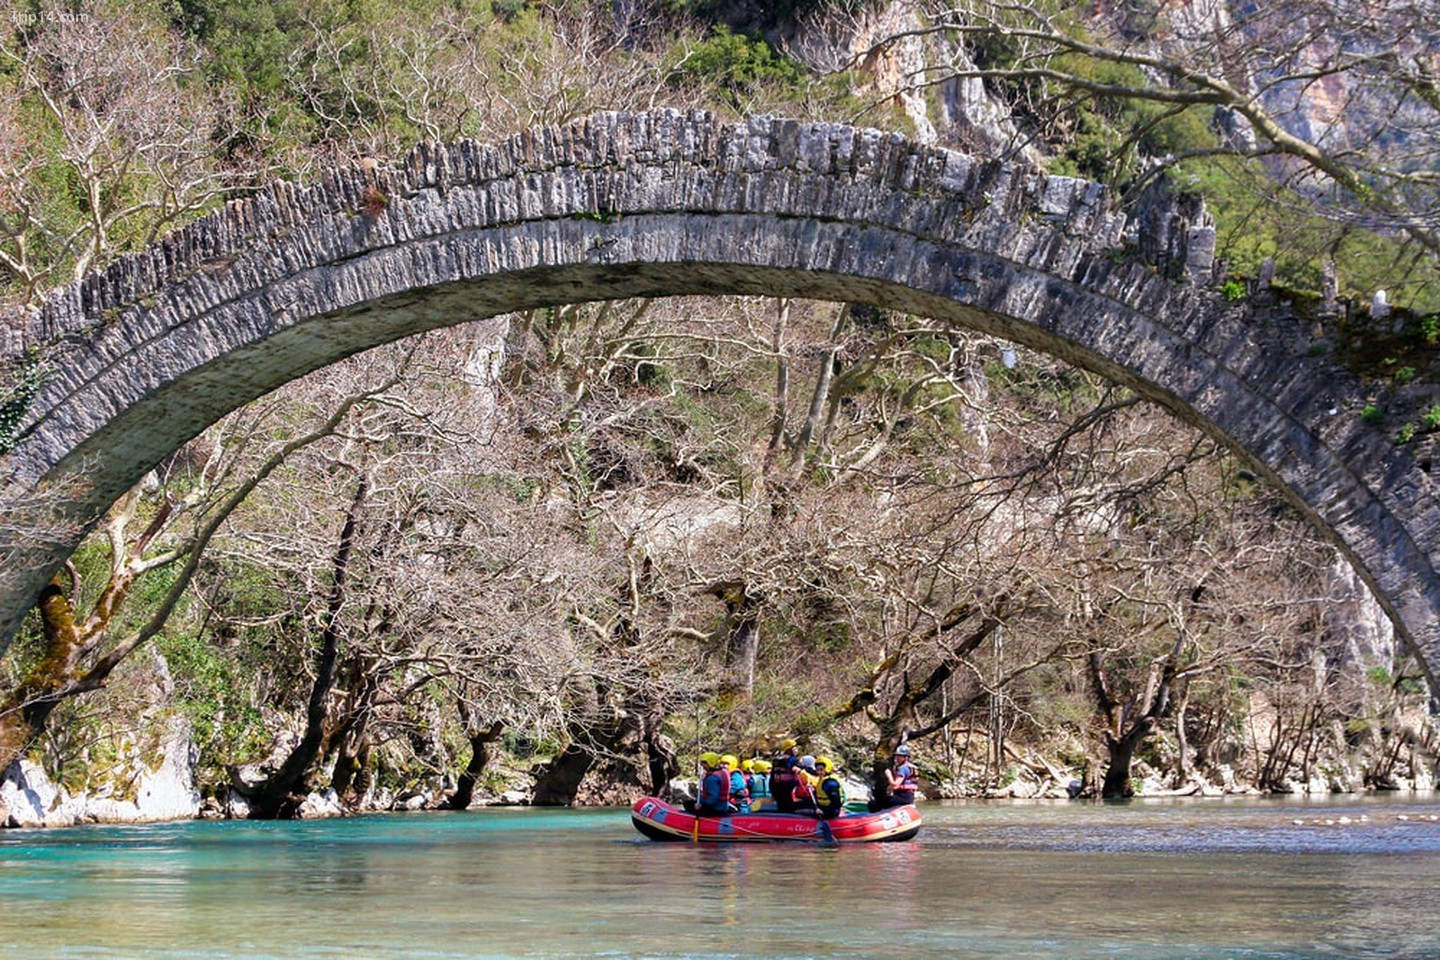  Đi bè ở sông Voidomatis, Epirus, Hy Lạp, dưới một cây cầu đá cũ   |   